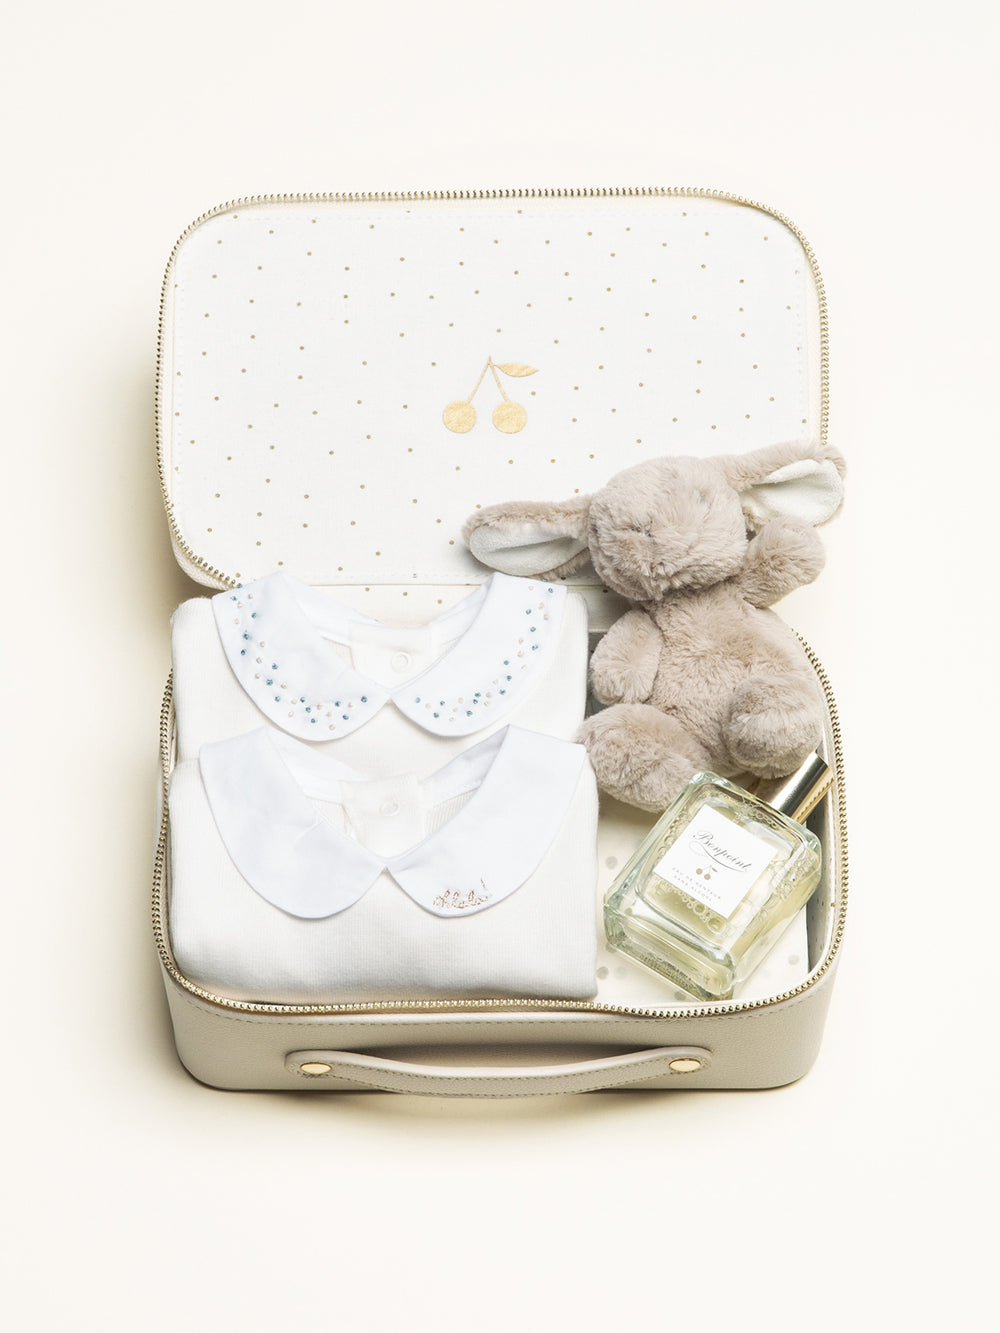 Petite valise naissance - Bodys, peluche et eau de senteur